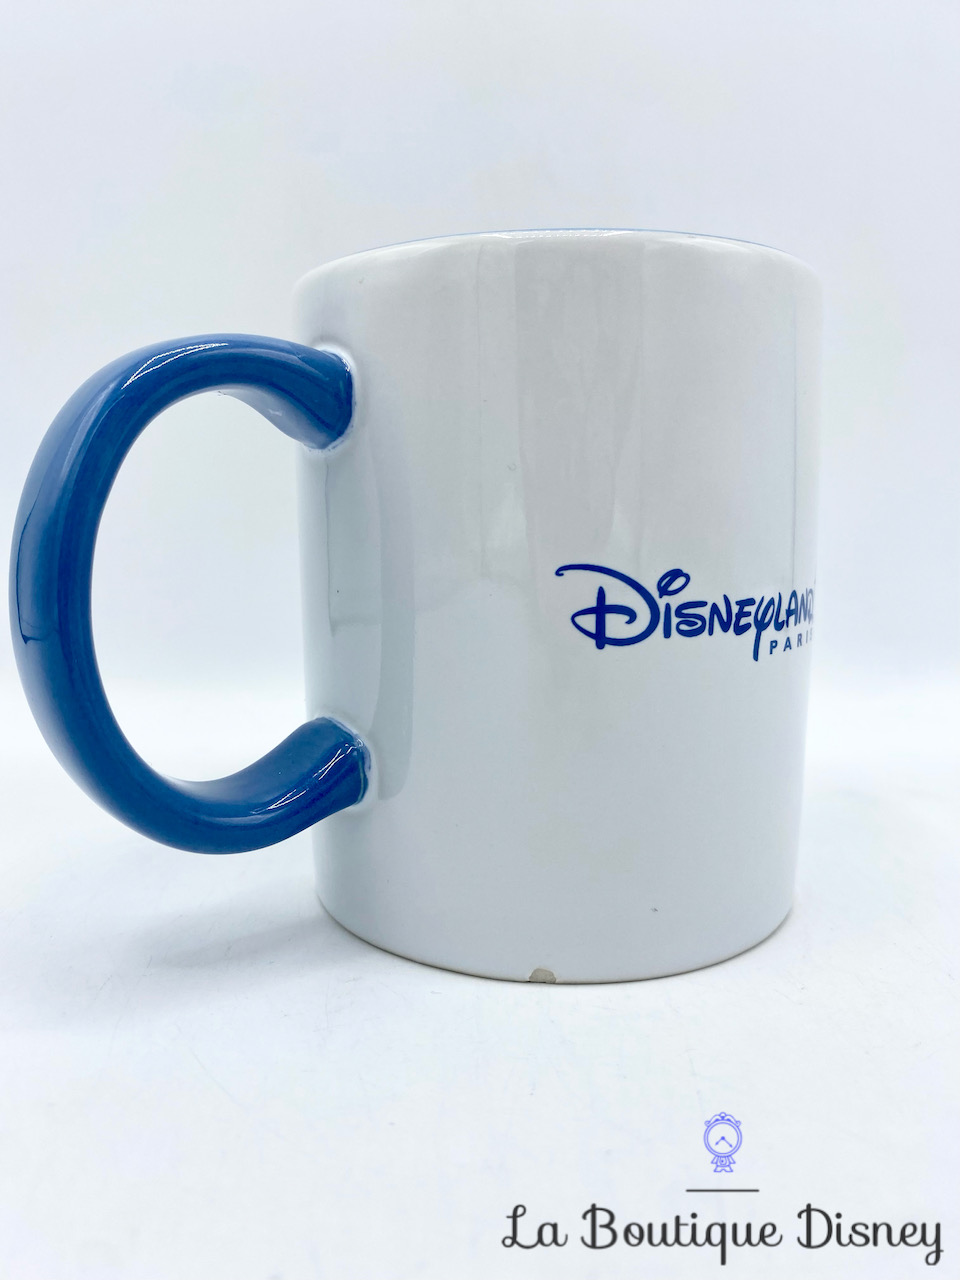 Tasse Stitch Merry Stitchmas Disneyland Paris mug Disney monstre bleu Noël